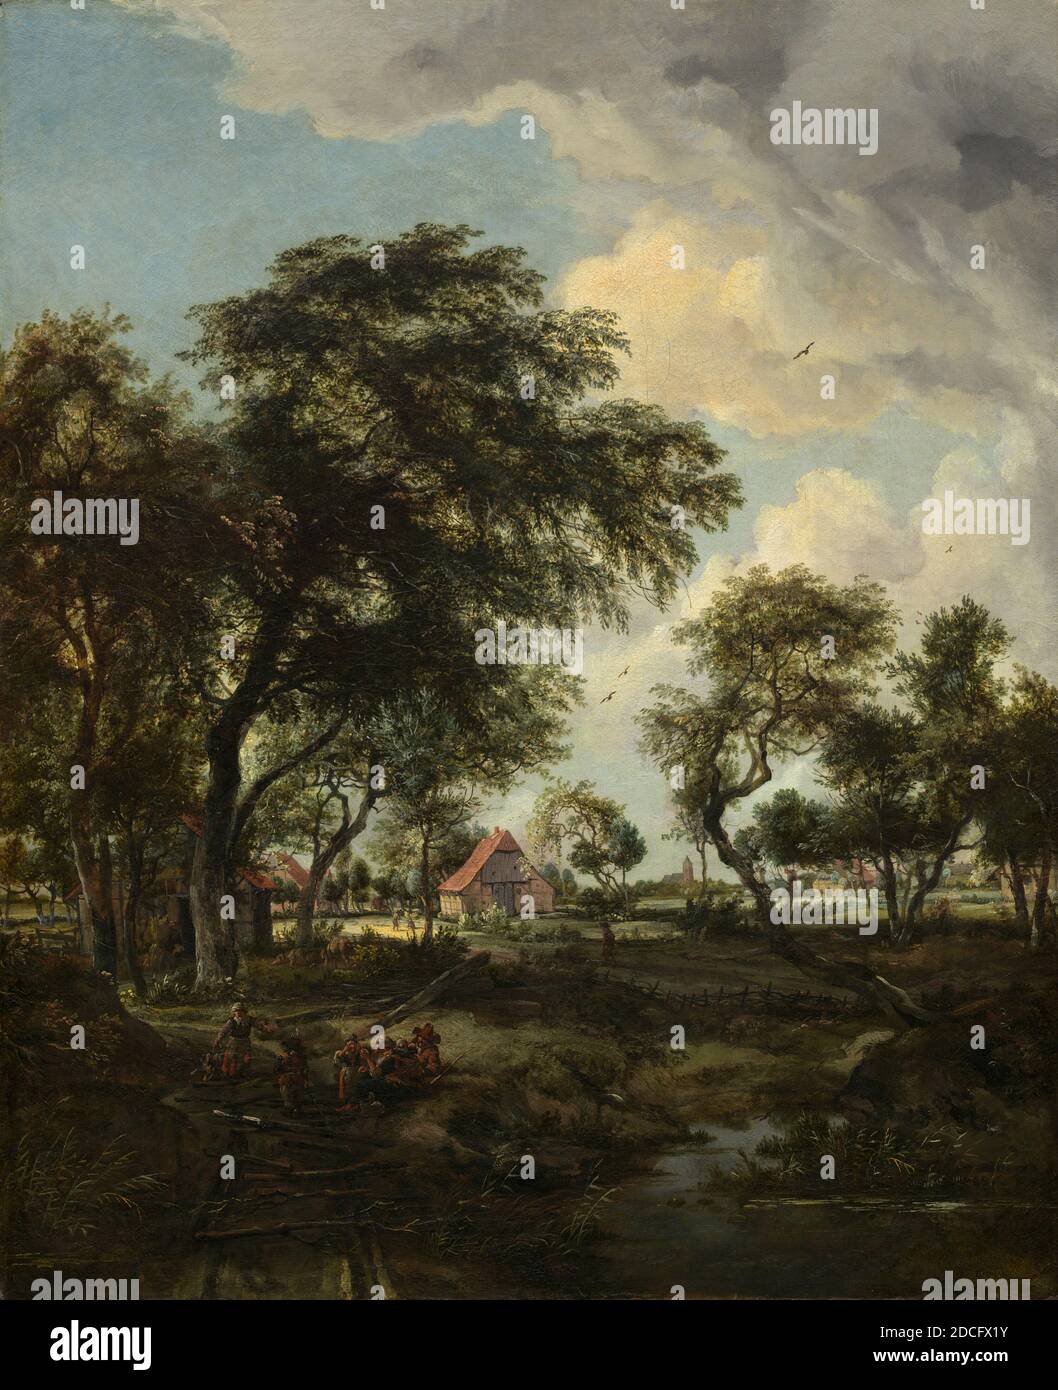 Meindert Hobbema, (artiste), néerlandais, 1638 - 1709, A Farm in the Sunlight, 1668, huile sur toile, globalement : 81.9 x 66.4 cm (32 1/4 x 26 1/8 po), Meindert Hobbema a étudié sous le nom de l'artiste de paysage Jacob van Ruisdael, et quelques-unes de ses compositions ont évolué de l'œuvre de son maître d'époque. Hobbema s'est approché de la nature de manière directe, représentant des paysages pittoresques et ruraux, enlivenés par la présence de paysans ou de chasseurs. Il réutilise souvent des motifs favoris tels que de vieux moulins à eau, des chalets au toit de chaume et des digues à embobrendre, les réorganisant en de nouvelles compositions Banque D'Images